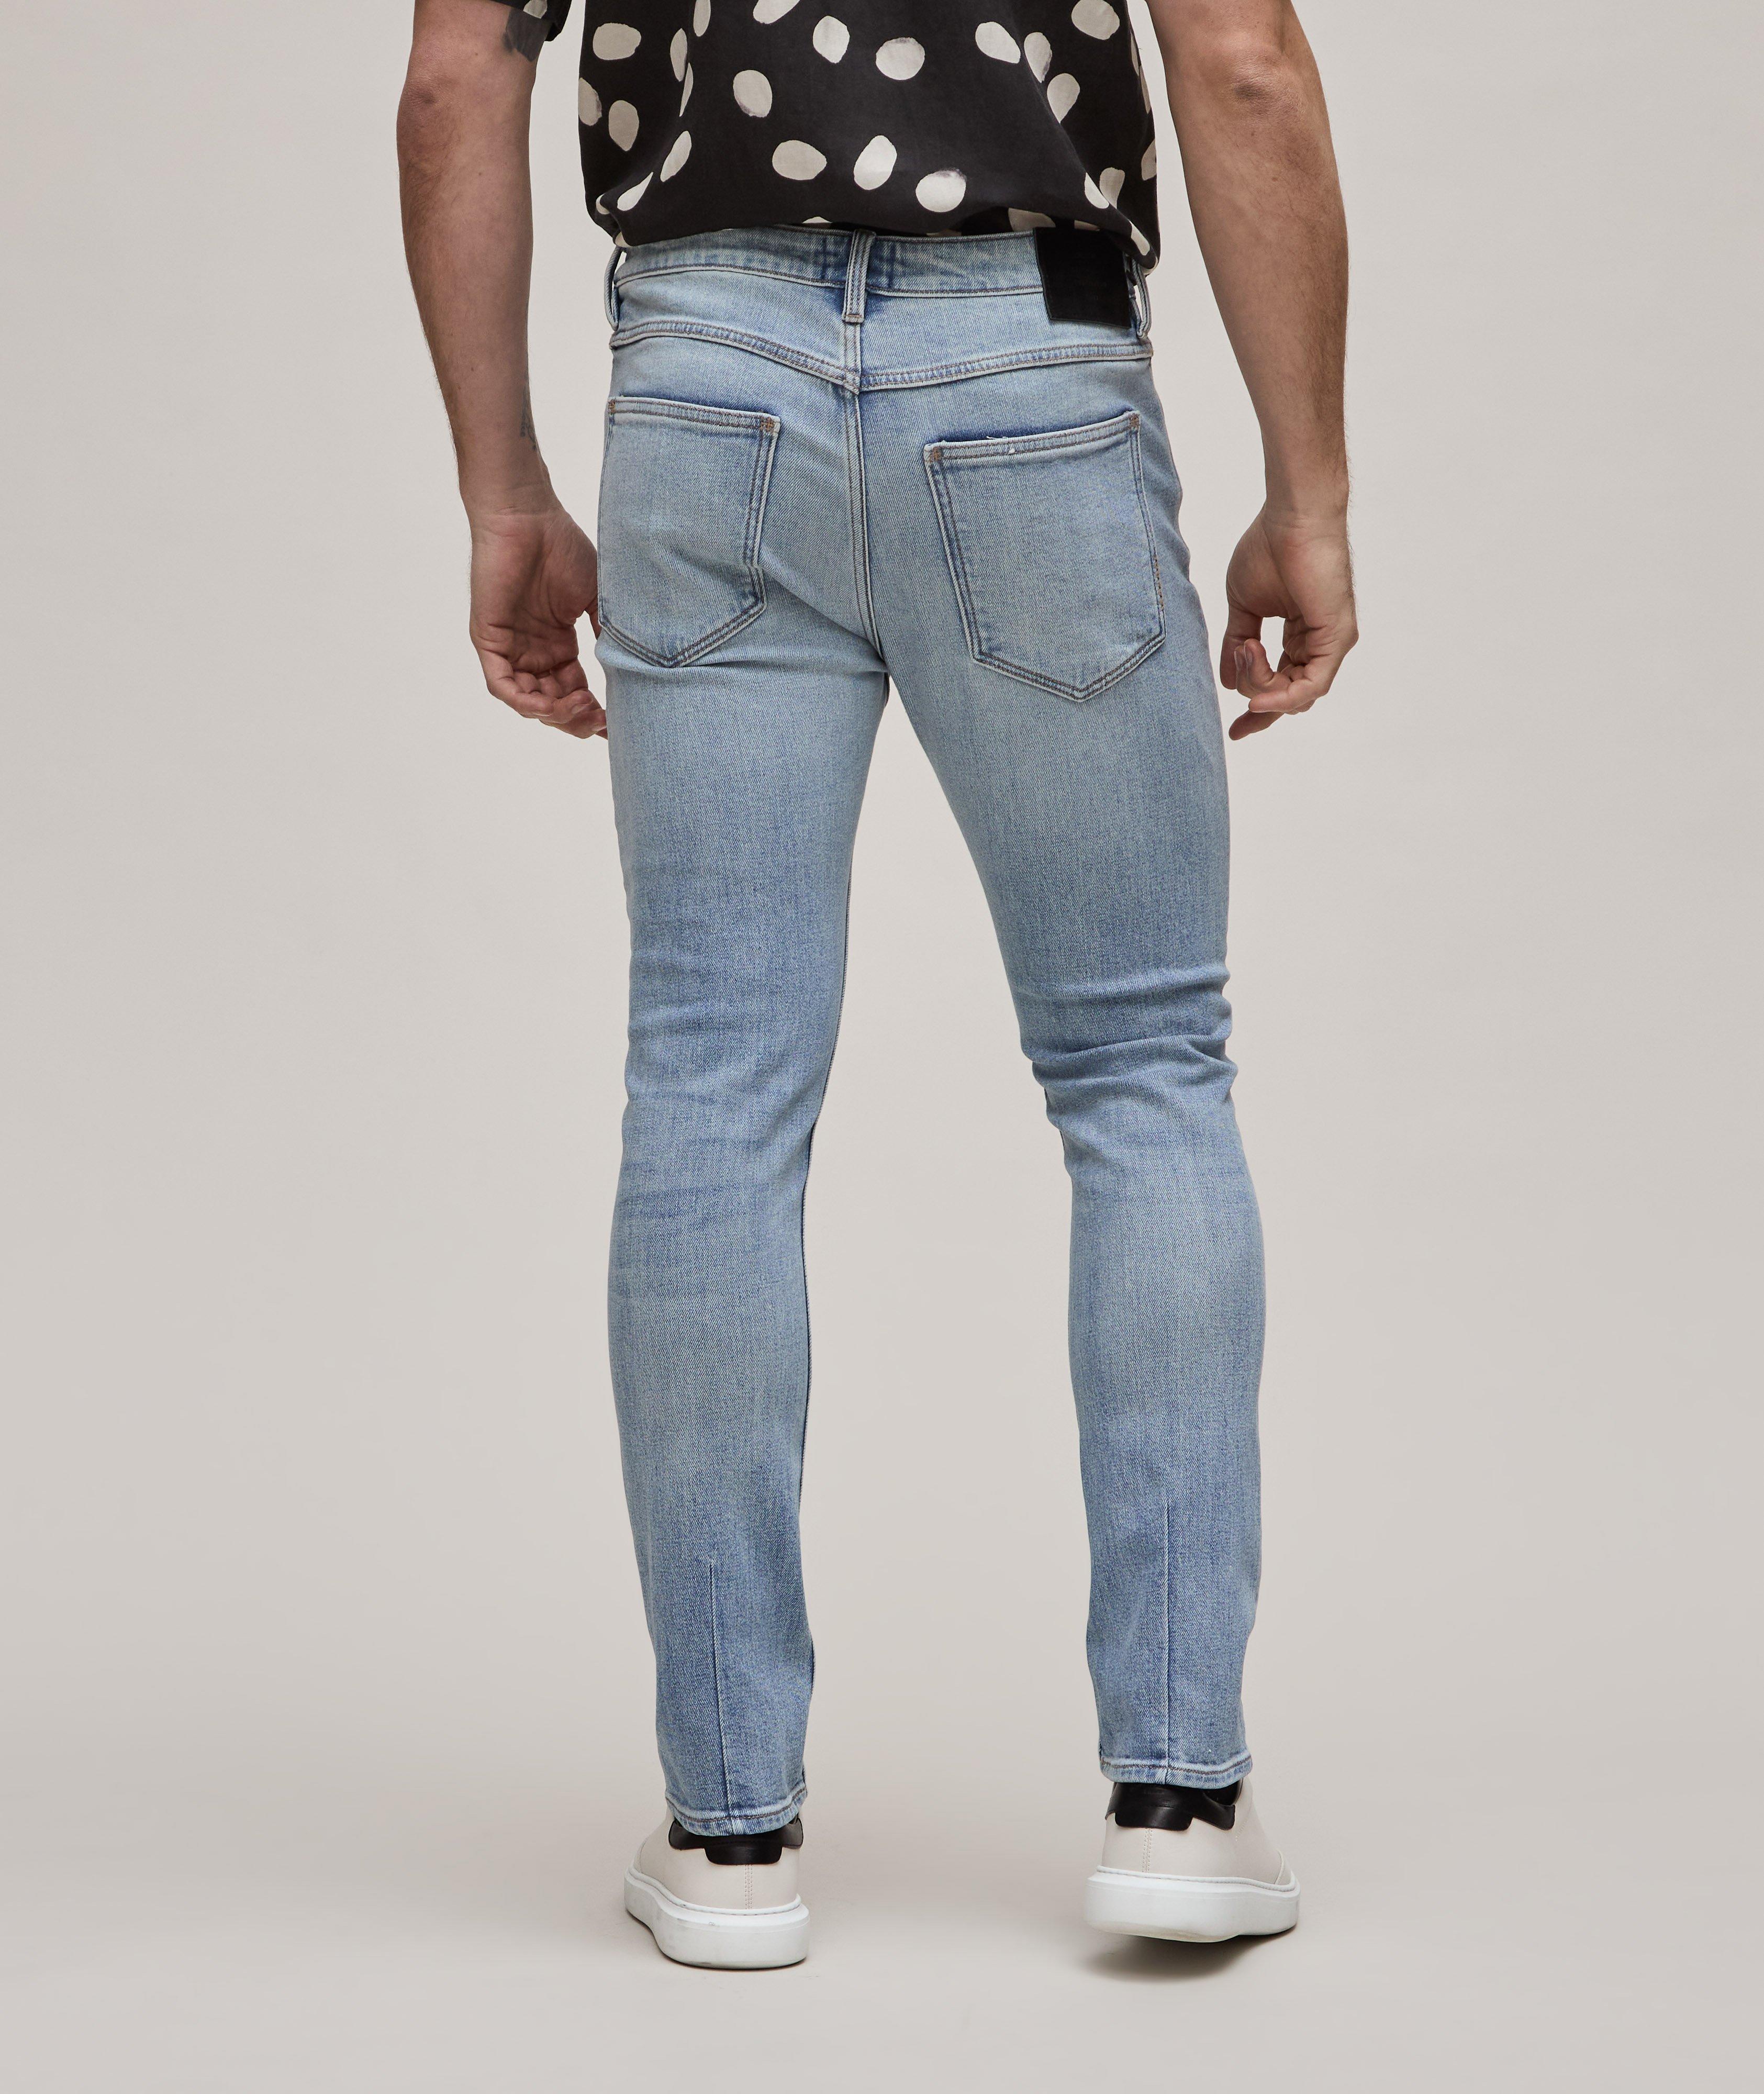 Lou Slim Alloy Cotton-Blend Jeans image 2